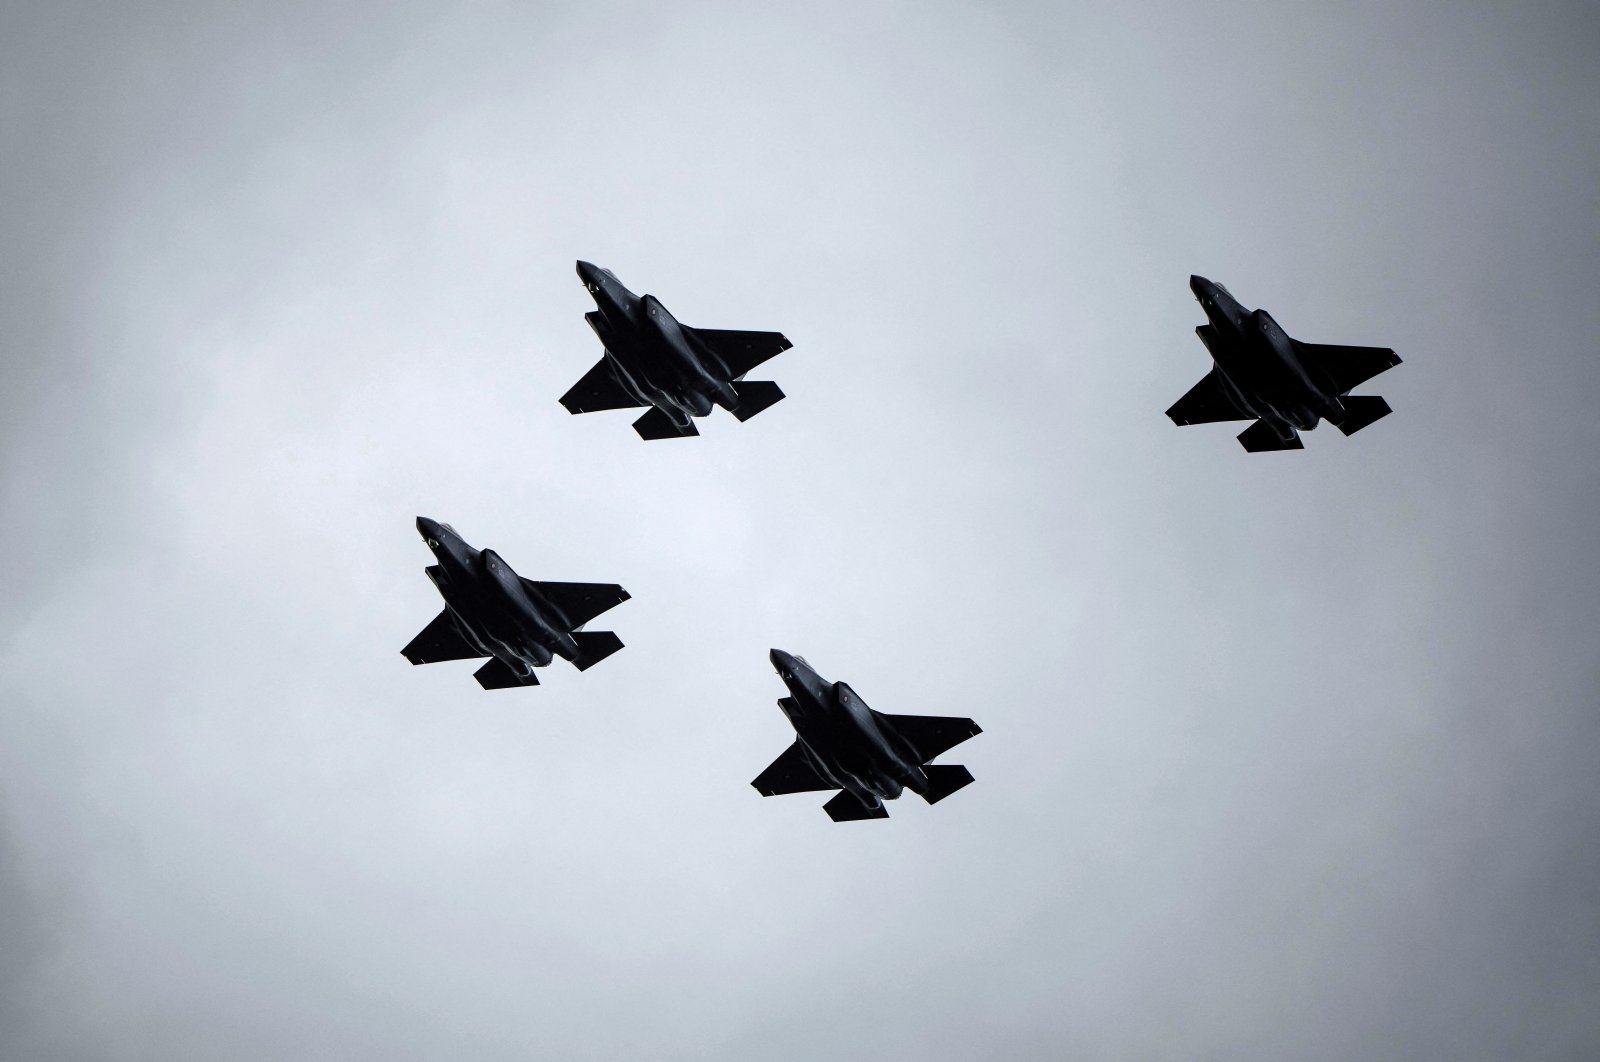 Česká republika podepsala smlouvu se Spojenými státy na nákup stíhaček F-35 za 6,6 miliardy dolarů